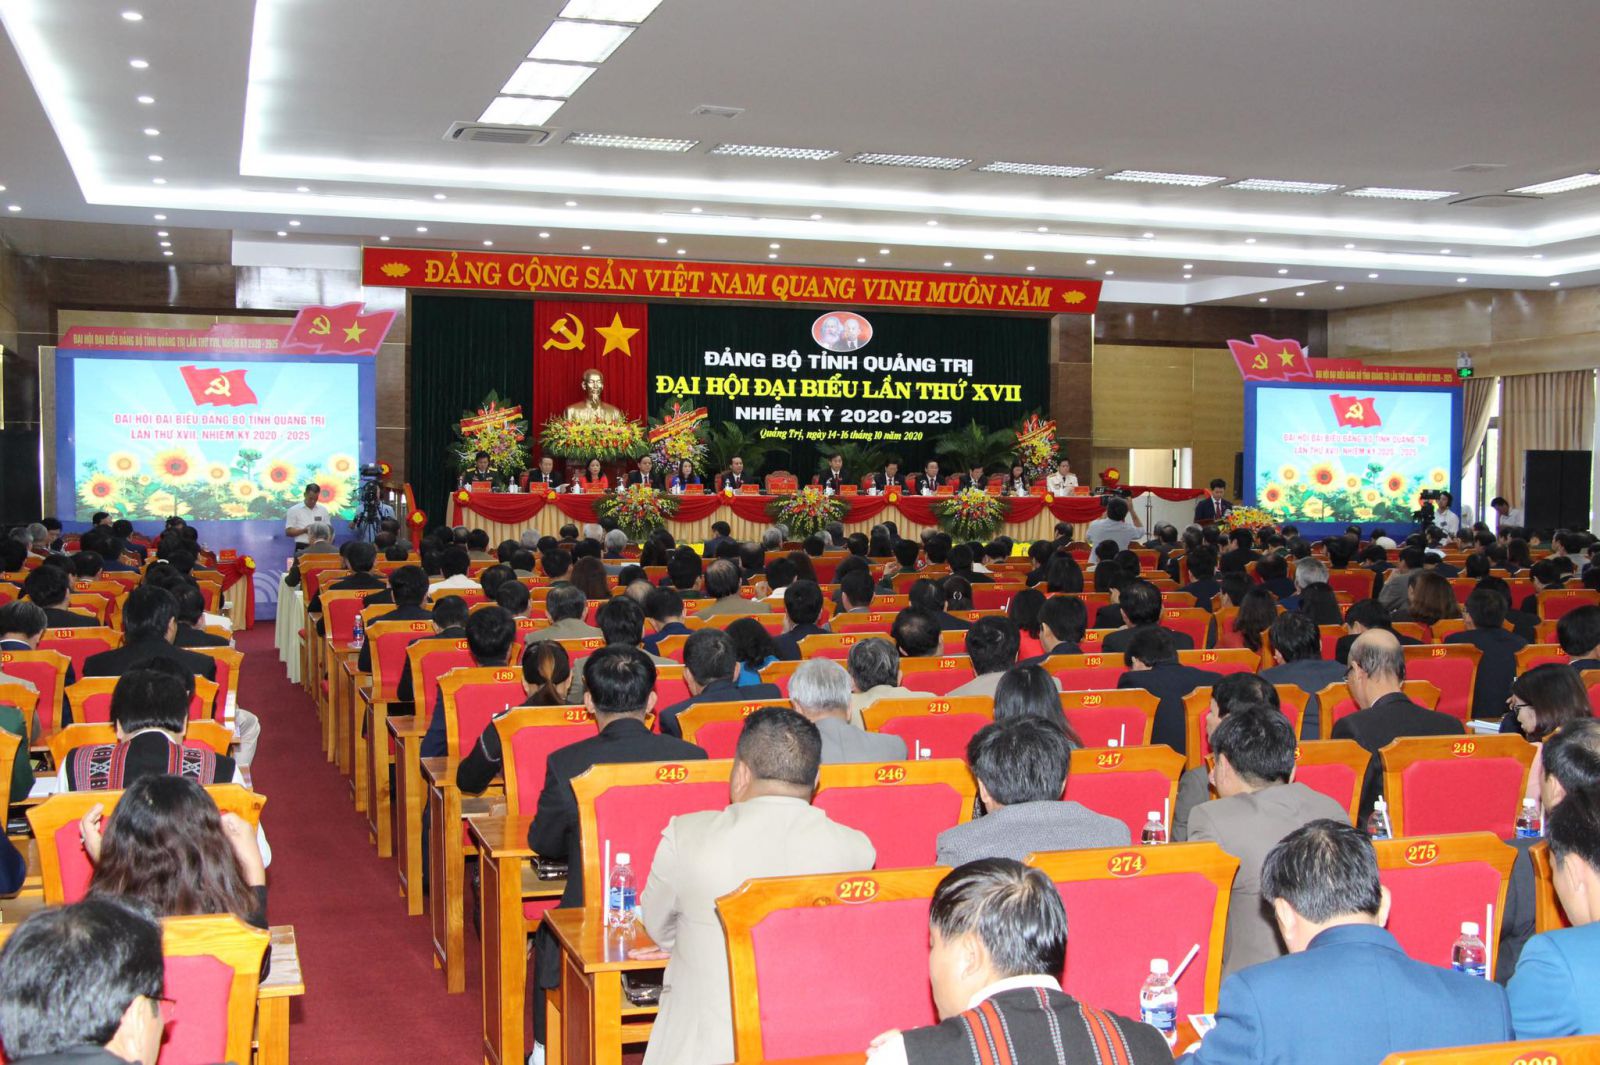 Đại hội Đảng bộ tỉnh Quảng Trị lần thứ XVII